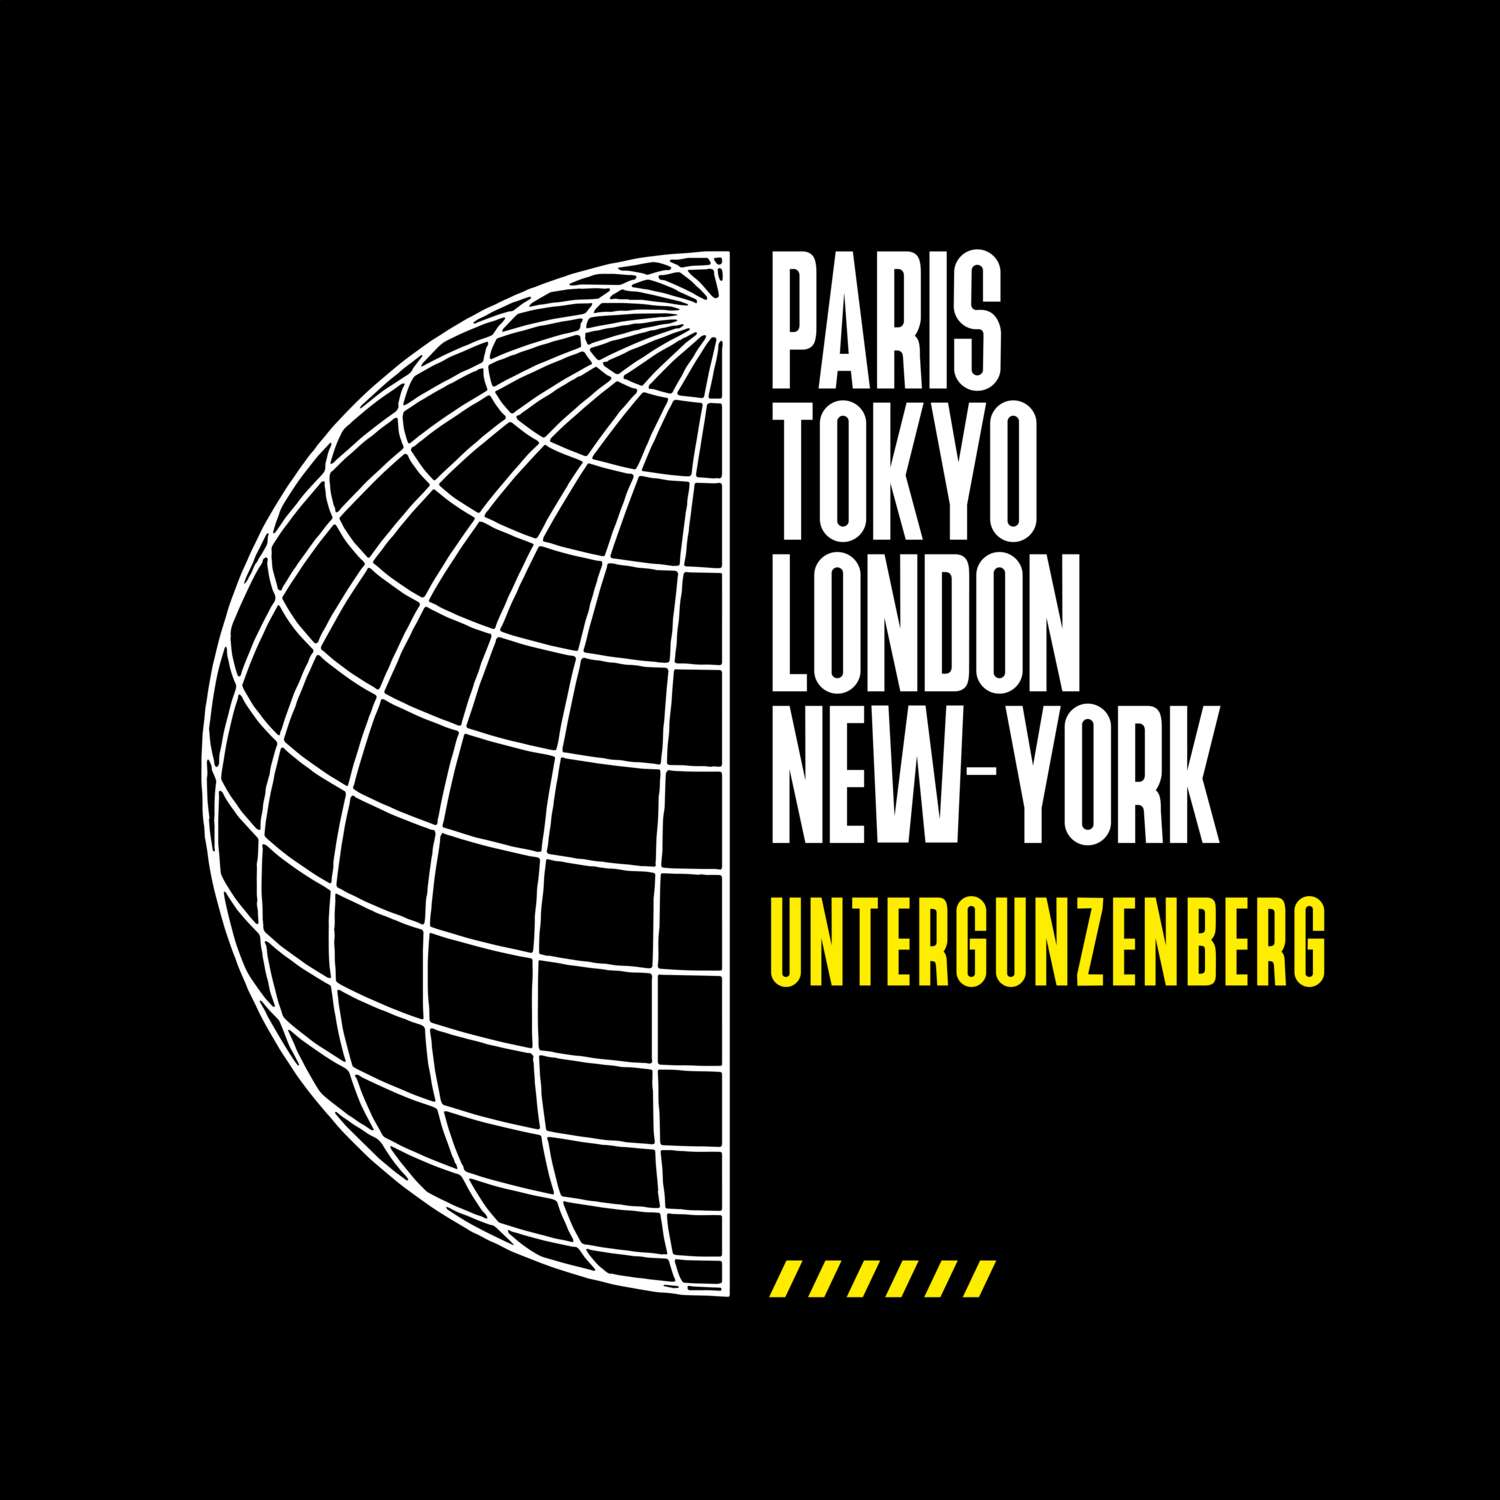 Untergunzenberg T-Shirt »Paris Tokyo London«